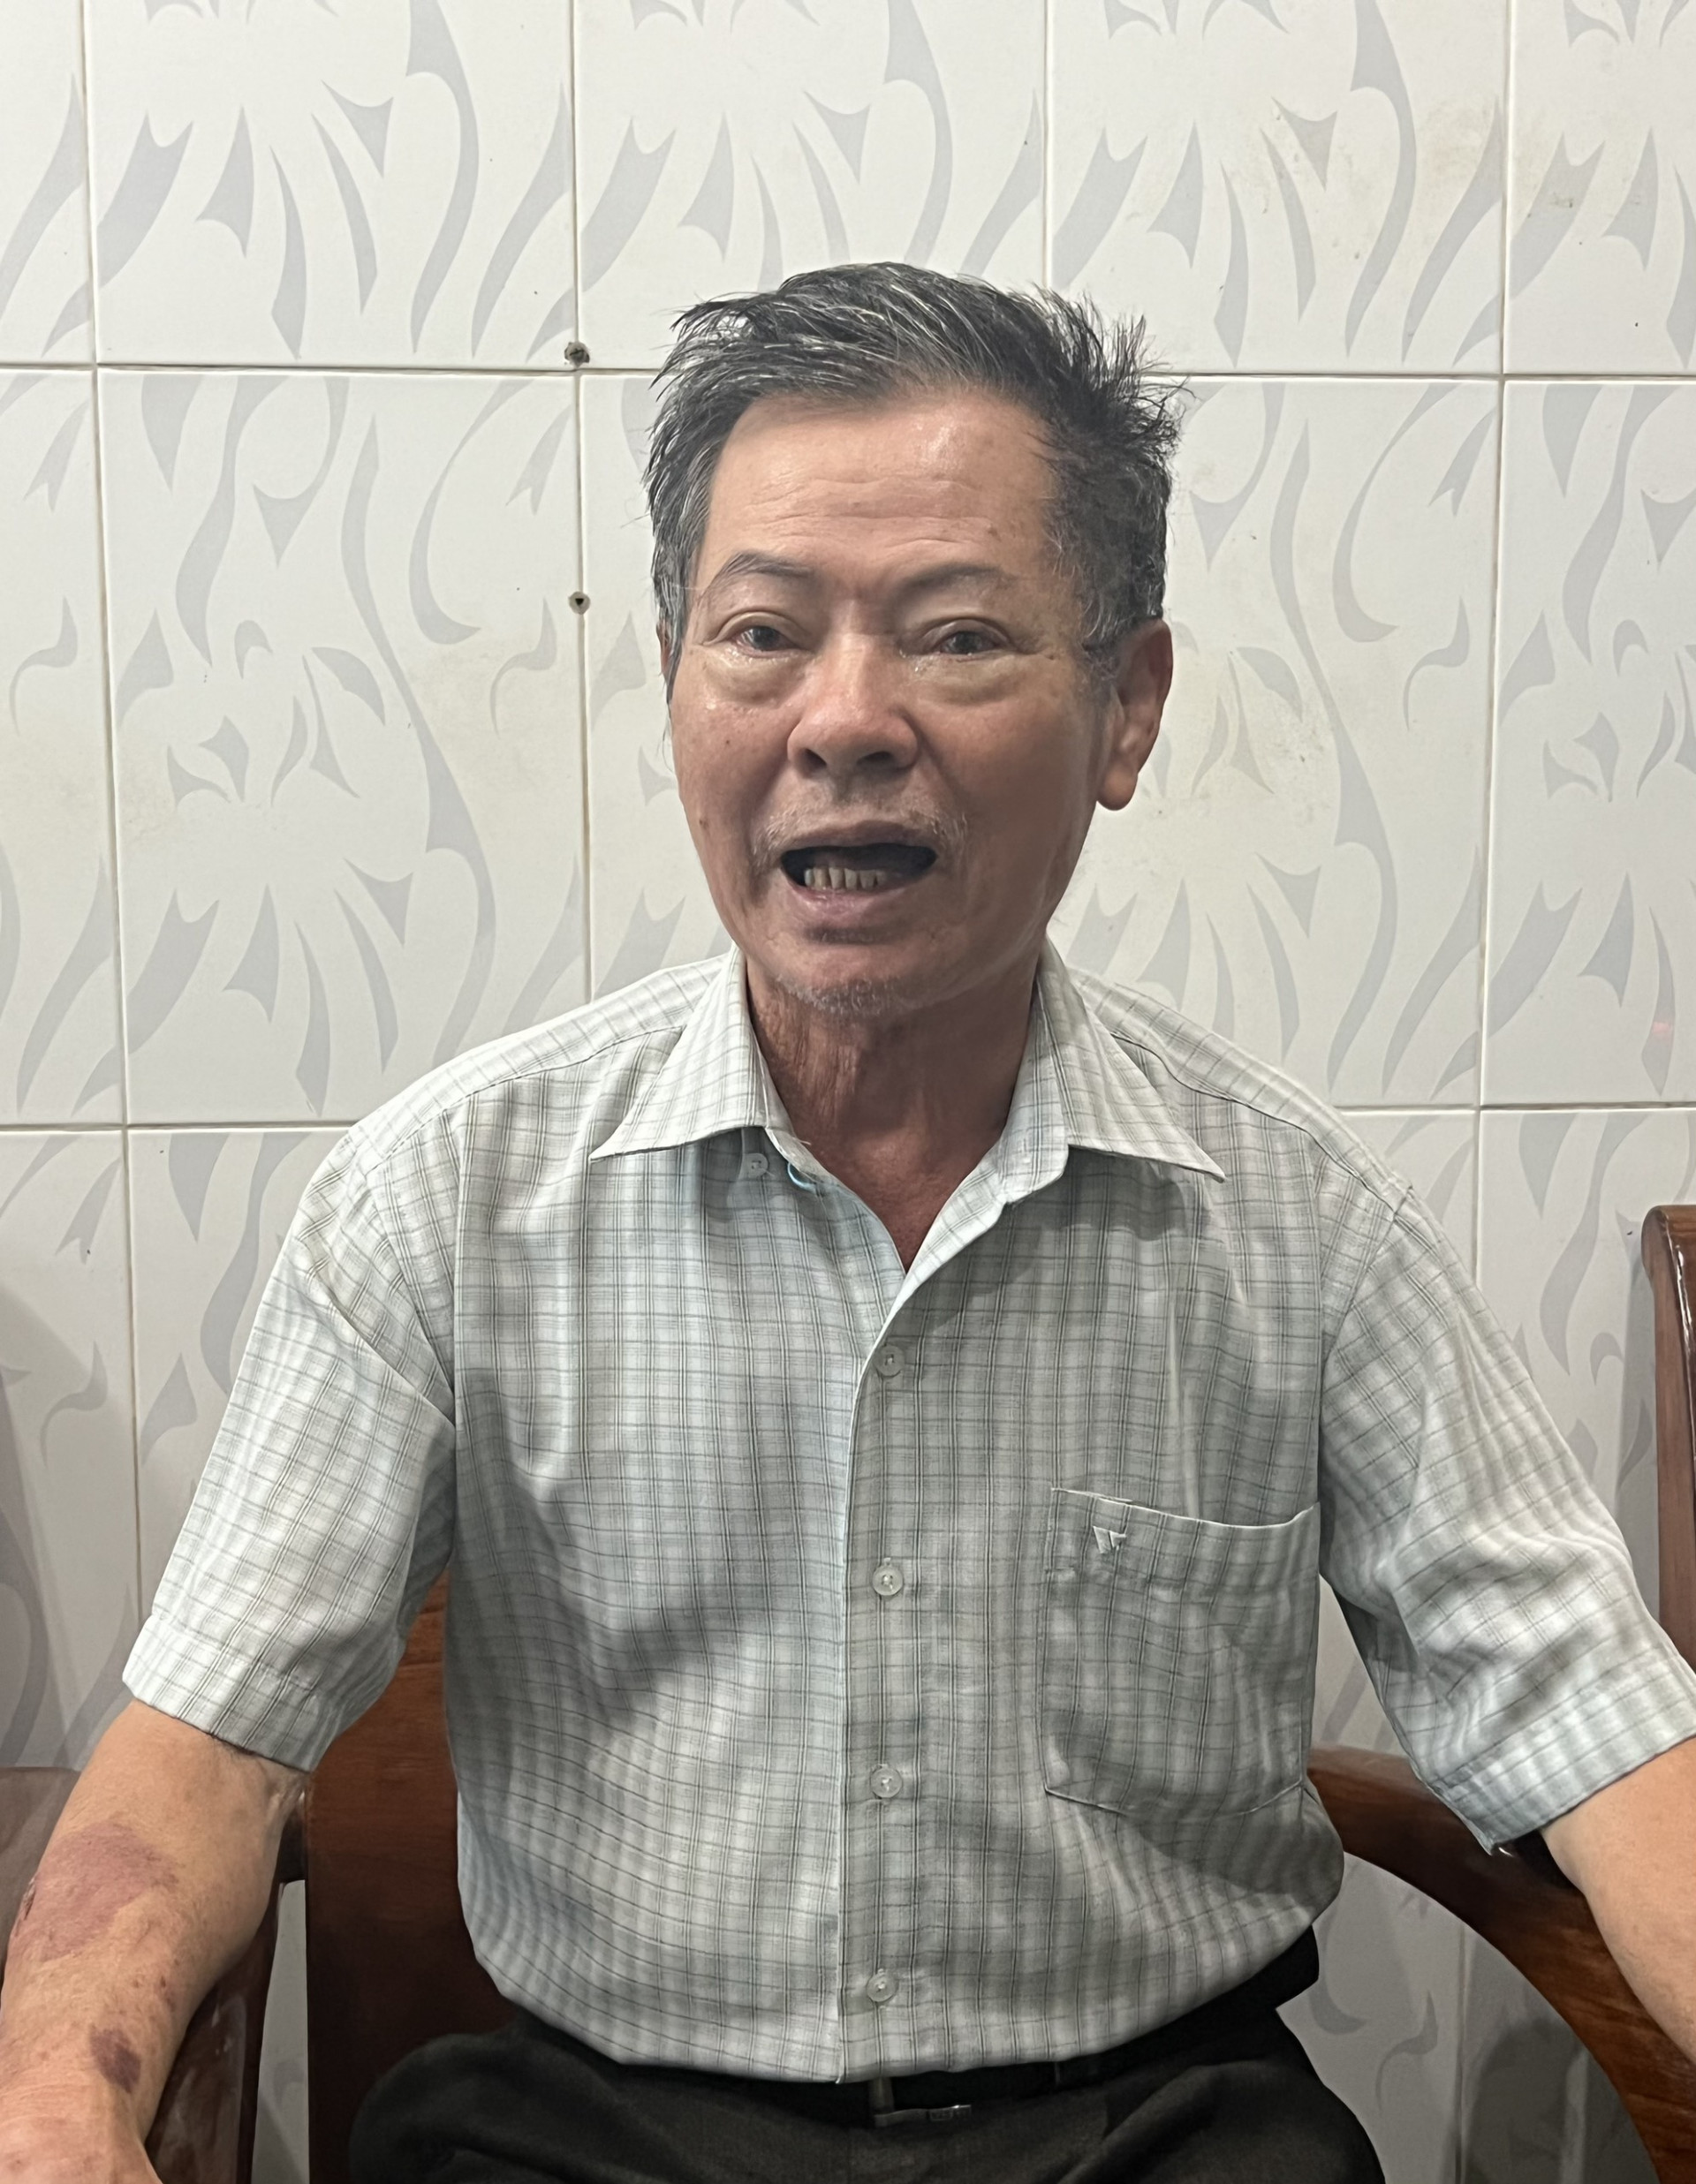 Ông Trần Văn Chương - nguyên Giám đốc Lâm trường Nha Trang, kể lại việc ký quyết định cấp đất, cấp nhà cho các cán bộ, công nhân của lâm trường.